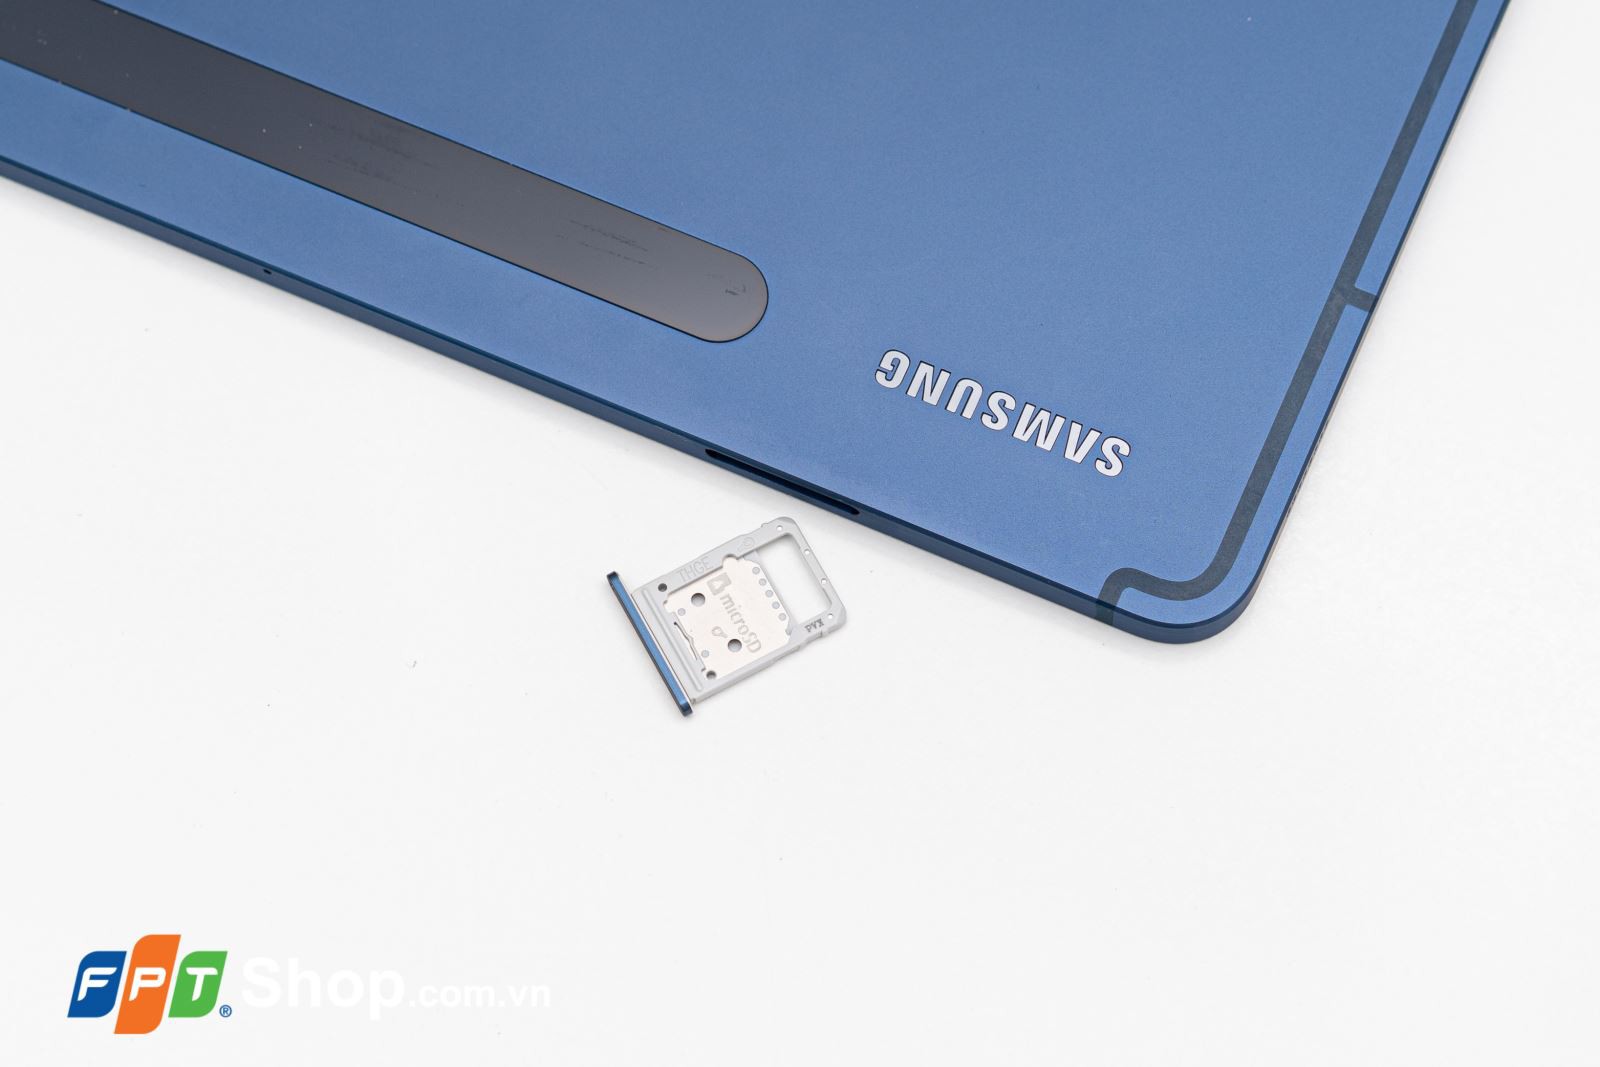 Samsung Galaxy Tab S7/S7+ Xanh Navy – Những chiếc tablet đáng giá đến từng xu 5